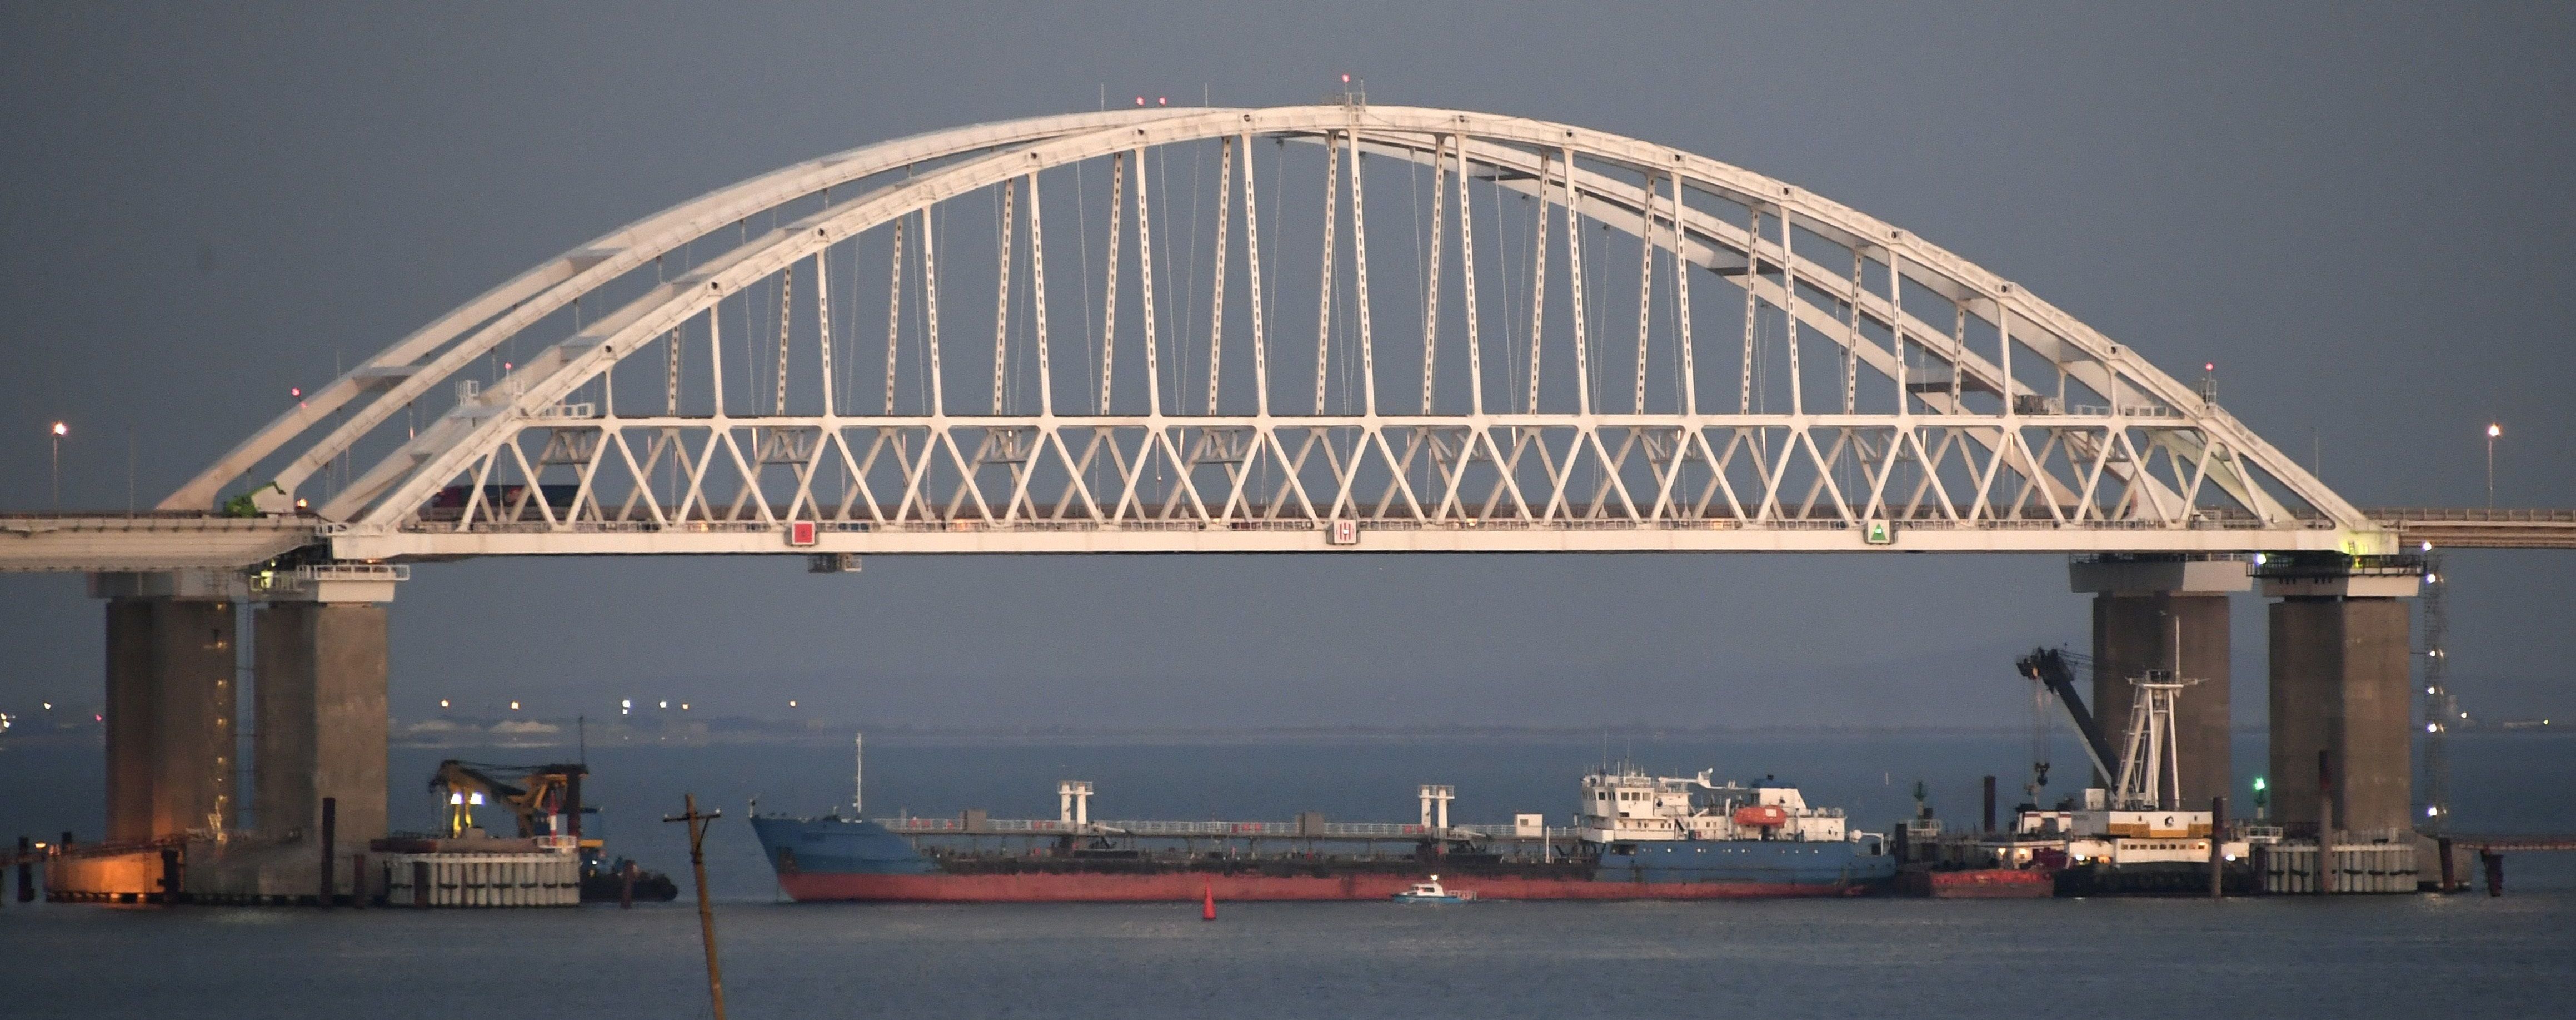 СНБО ввел санкции против компаний, участвовавших в строительстве Керченского моста